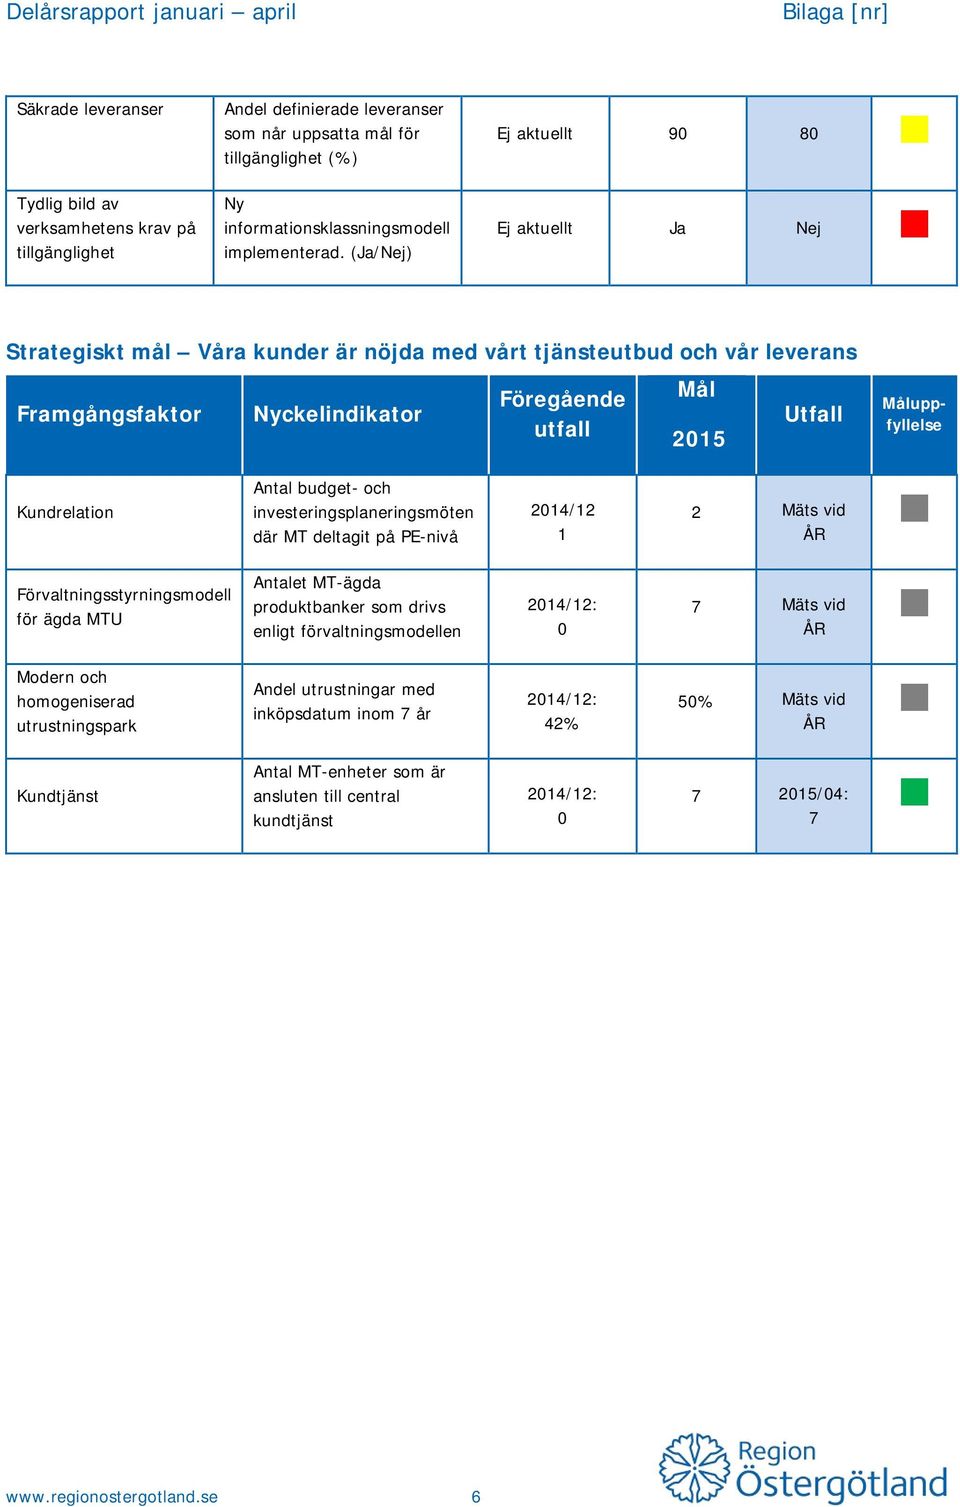 investeringsplaneringsmöten där MT deltagit på PE-nivå 2014/12 1 2 Mäts vid ÅR Förvaltningsstyrningsmodell för ägda MTU Antalet MT-ägda produktbanker som drivs enligt förvaltningsmodellen 0 7 Mäts